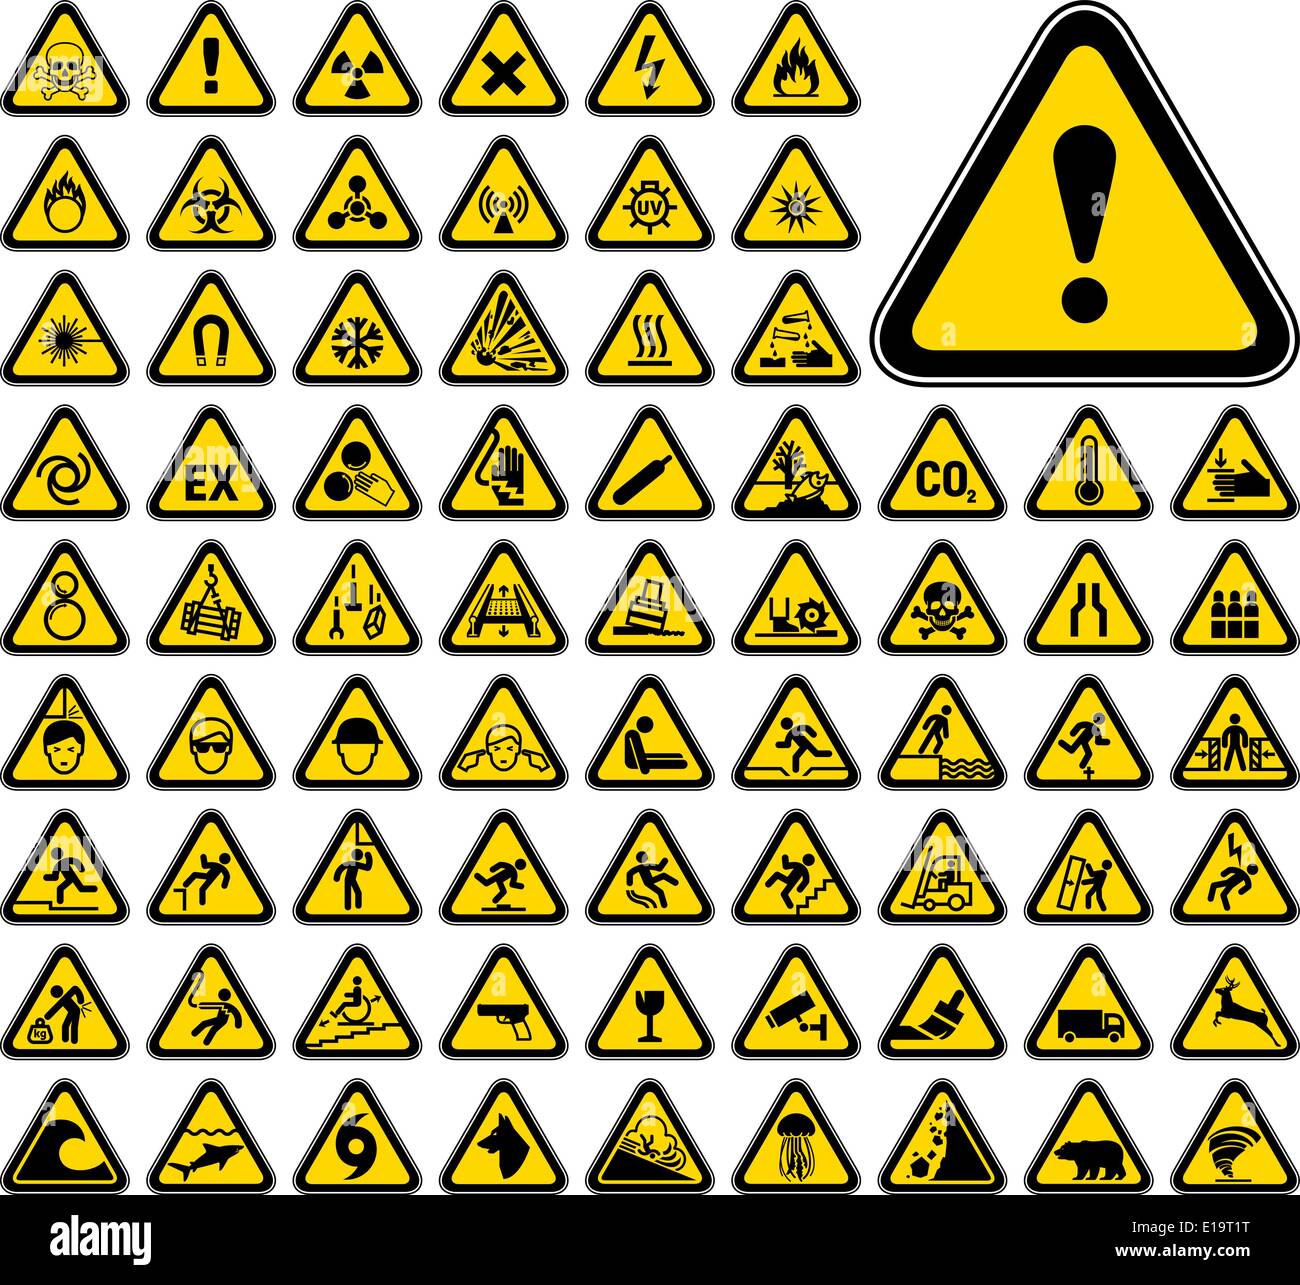 72 Triangular Warning Hazard Symbols Stock Vector